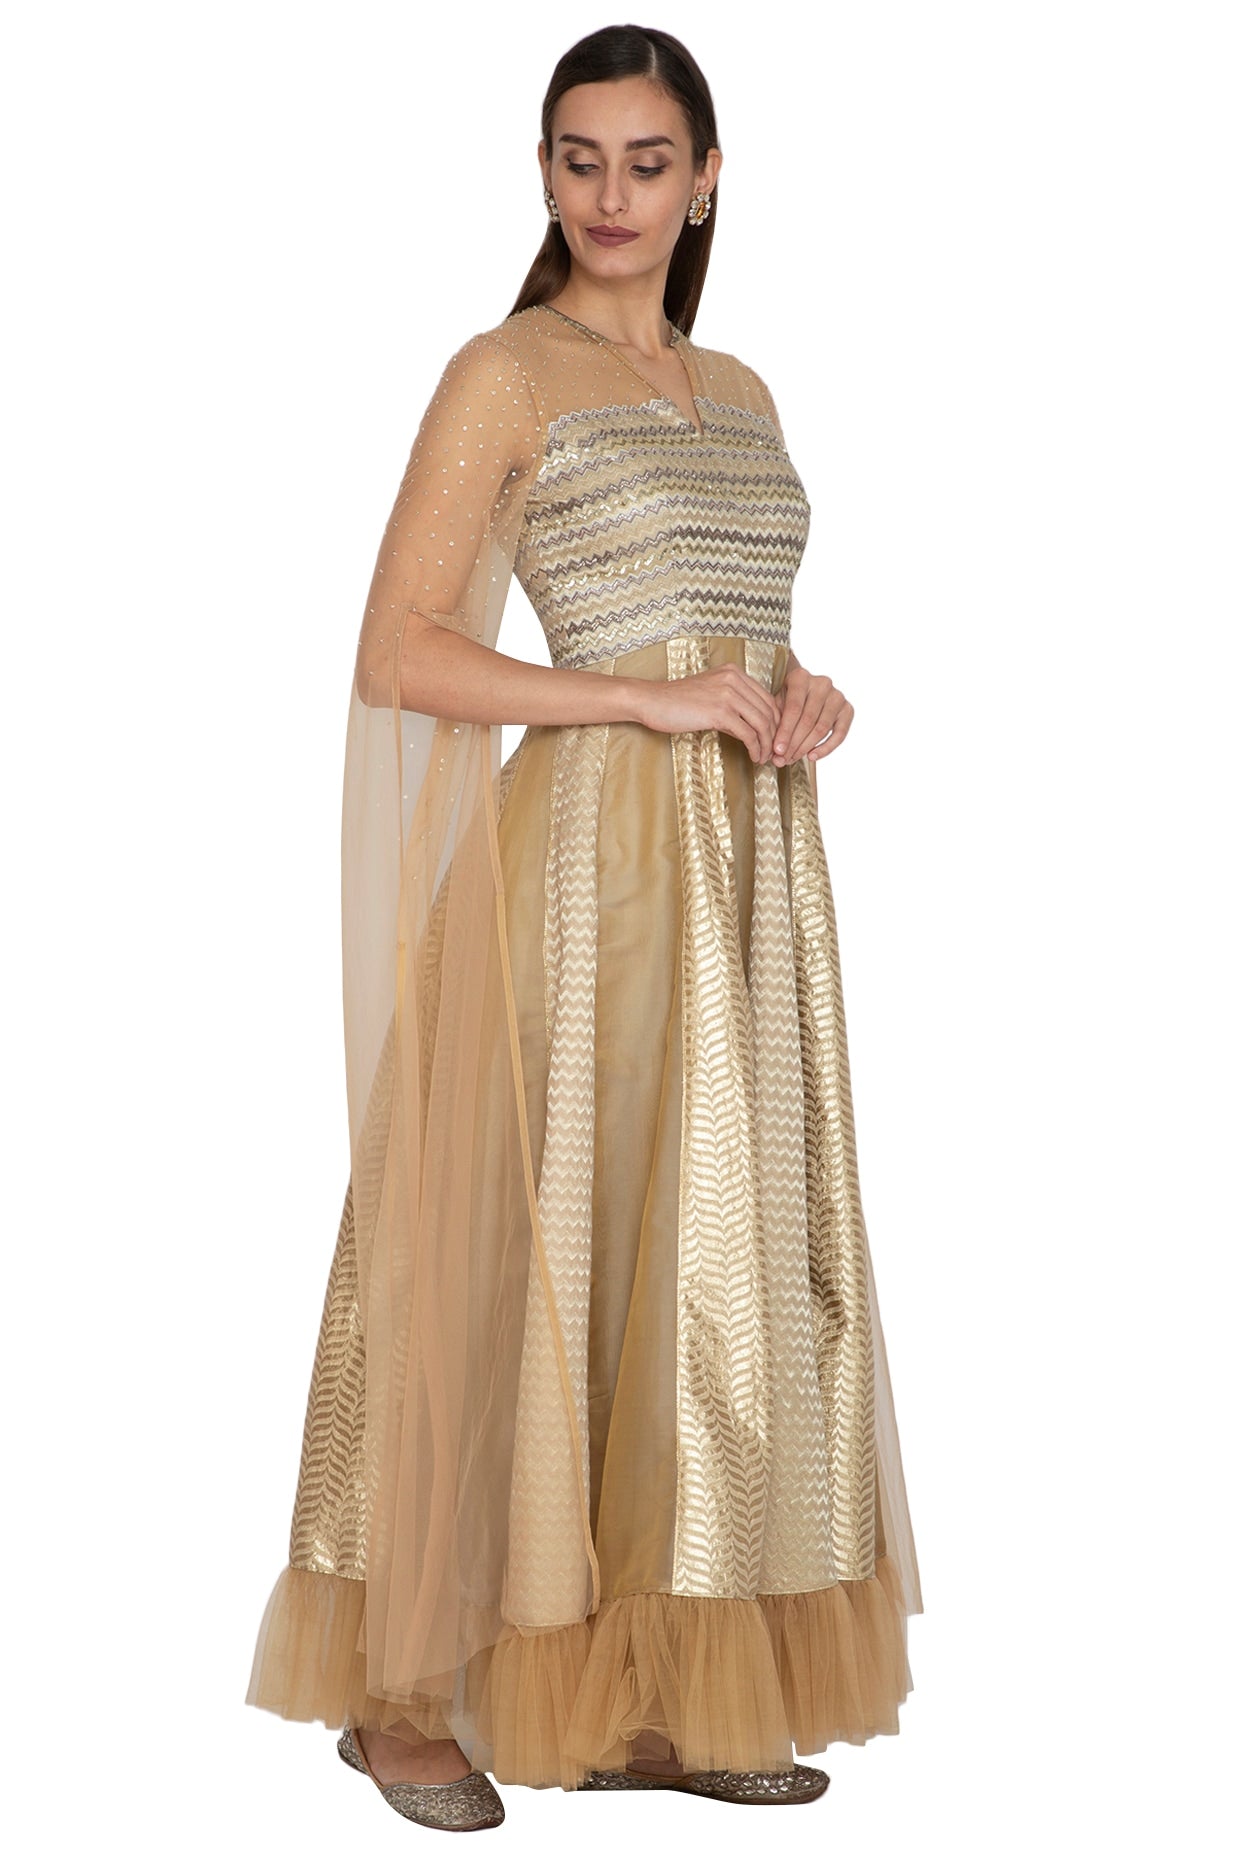 Beige Kalidar Gown With Flowy Net Sleeves